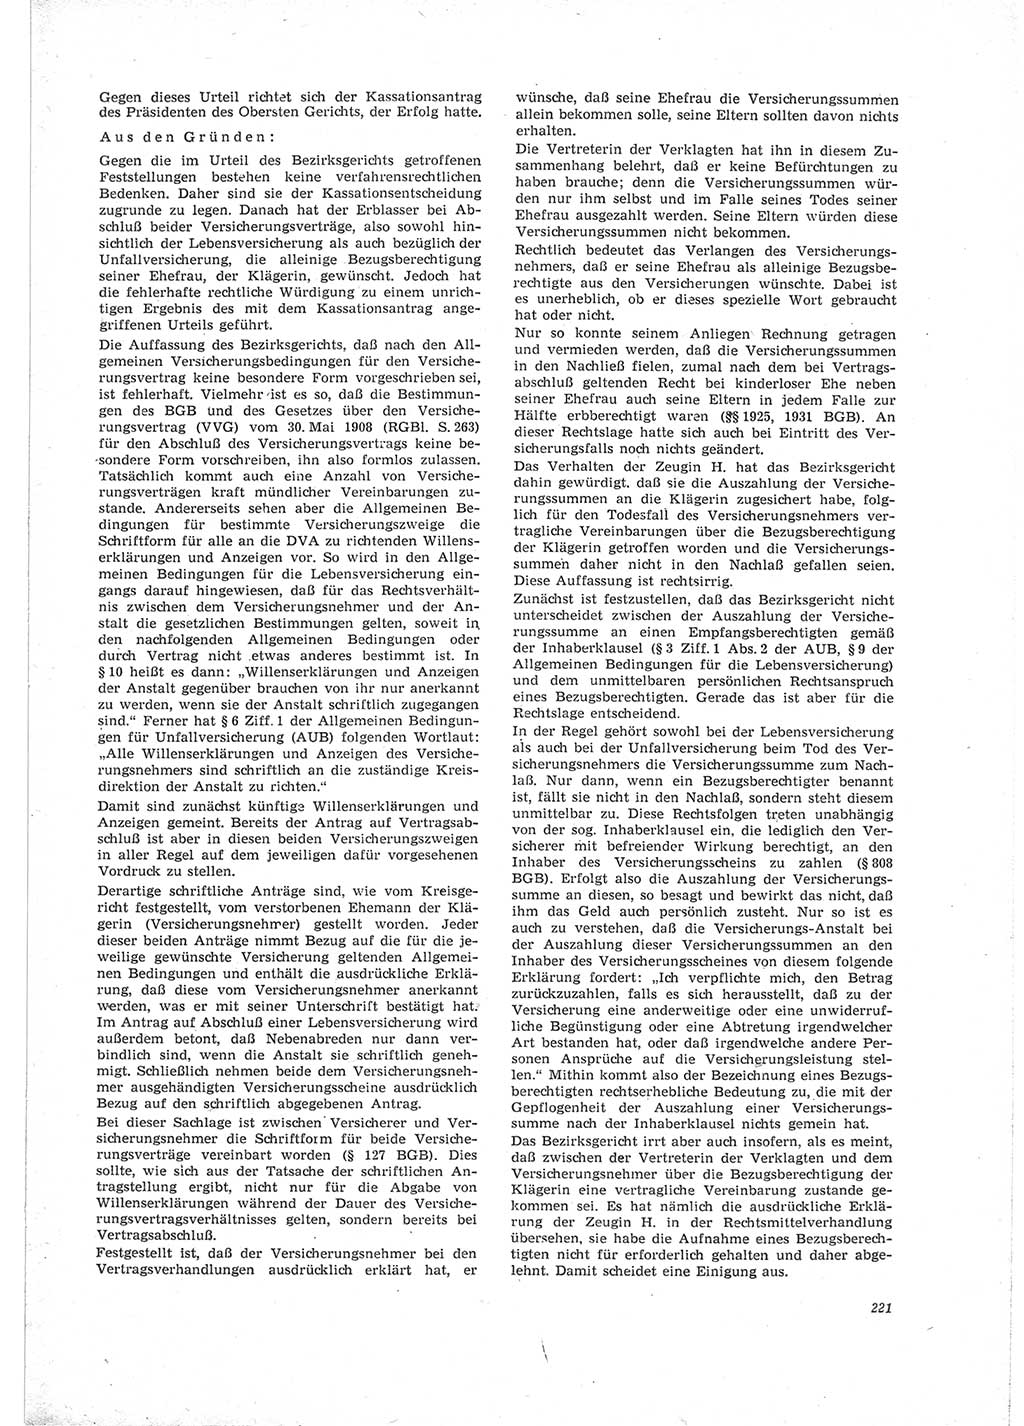 Neue Justiz (NJ), Zeitschrift für Recht und Rechtswissenschaft [Deutsche Demokratische Republik (DDR)], 23. Jahrgang 1969, Seite 221 (NJ DDR 1969, S. 221)